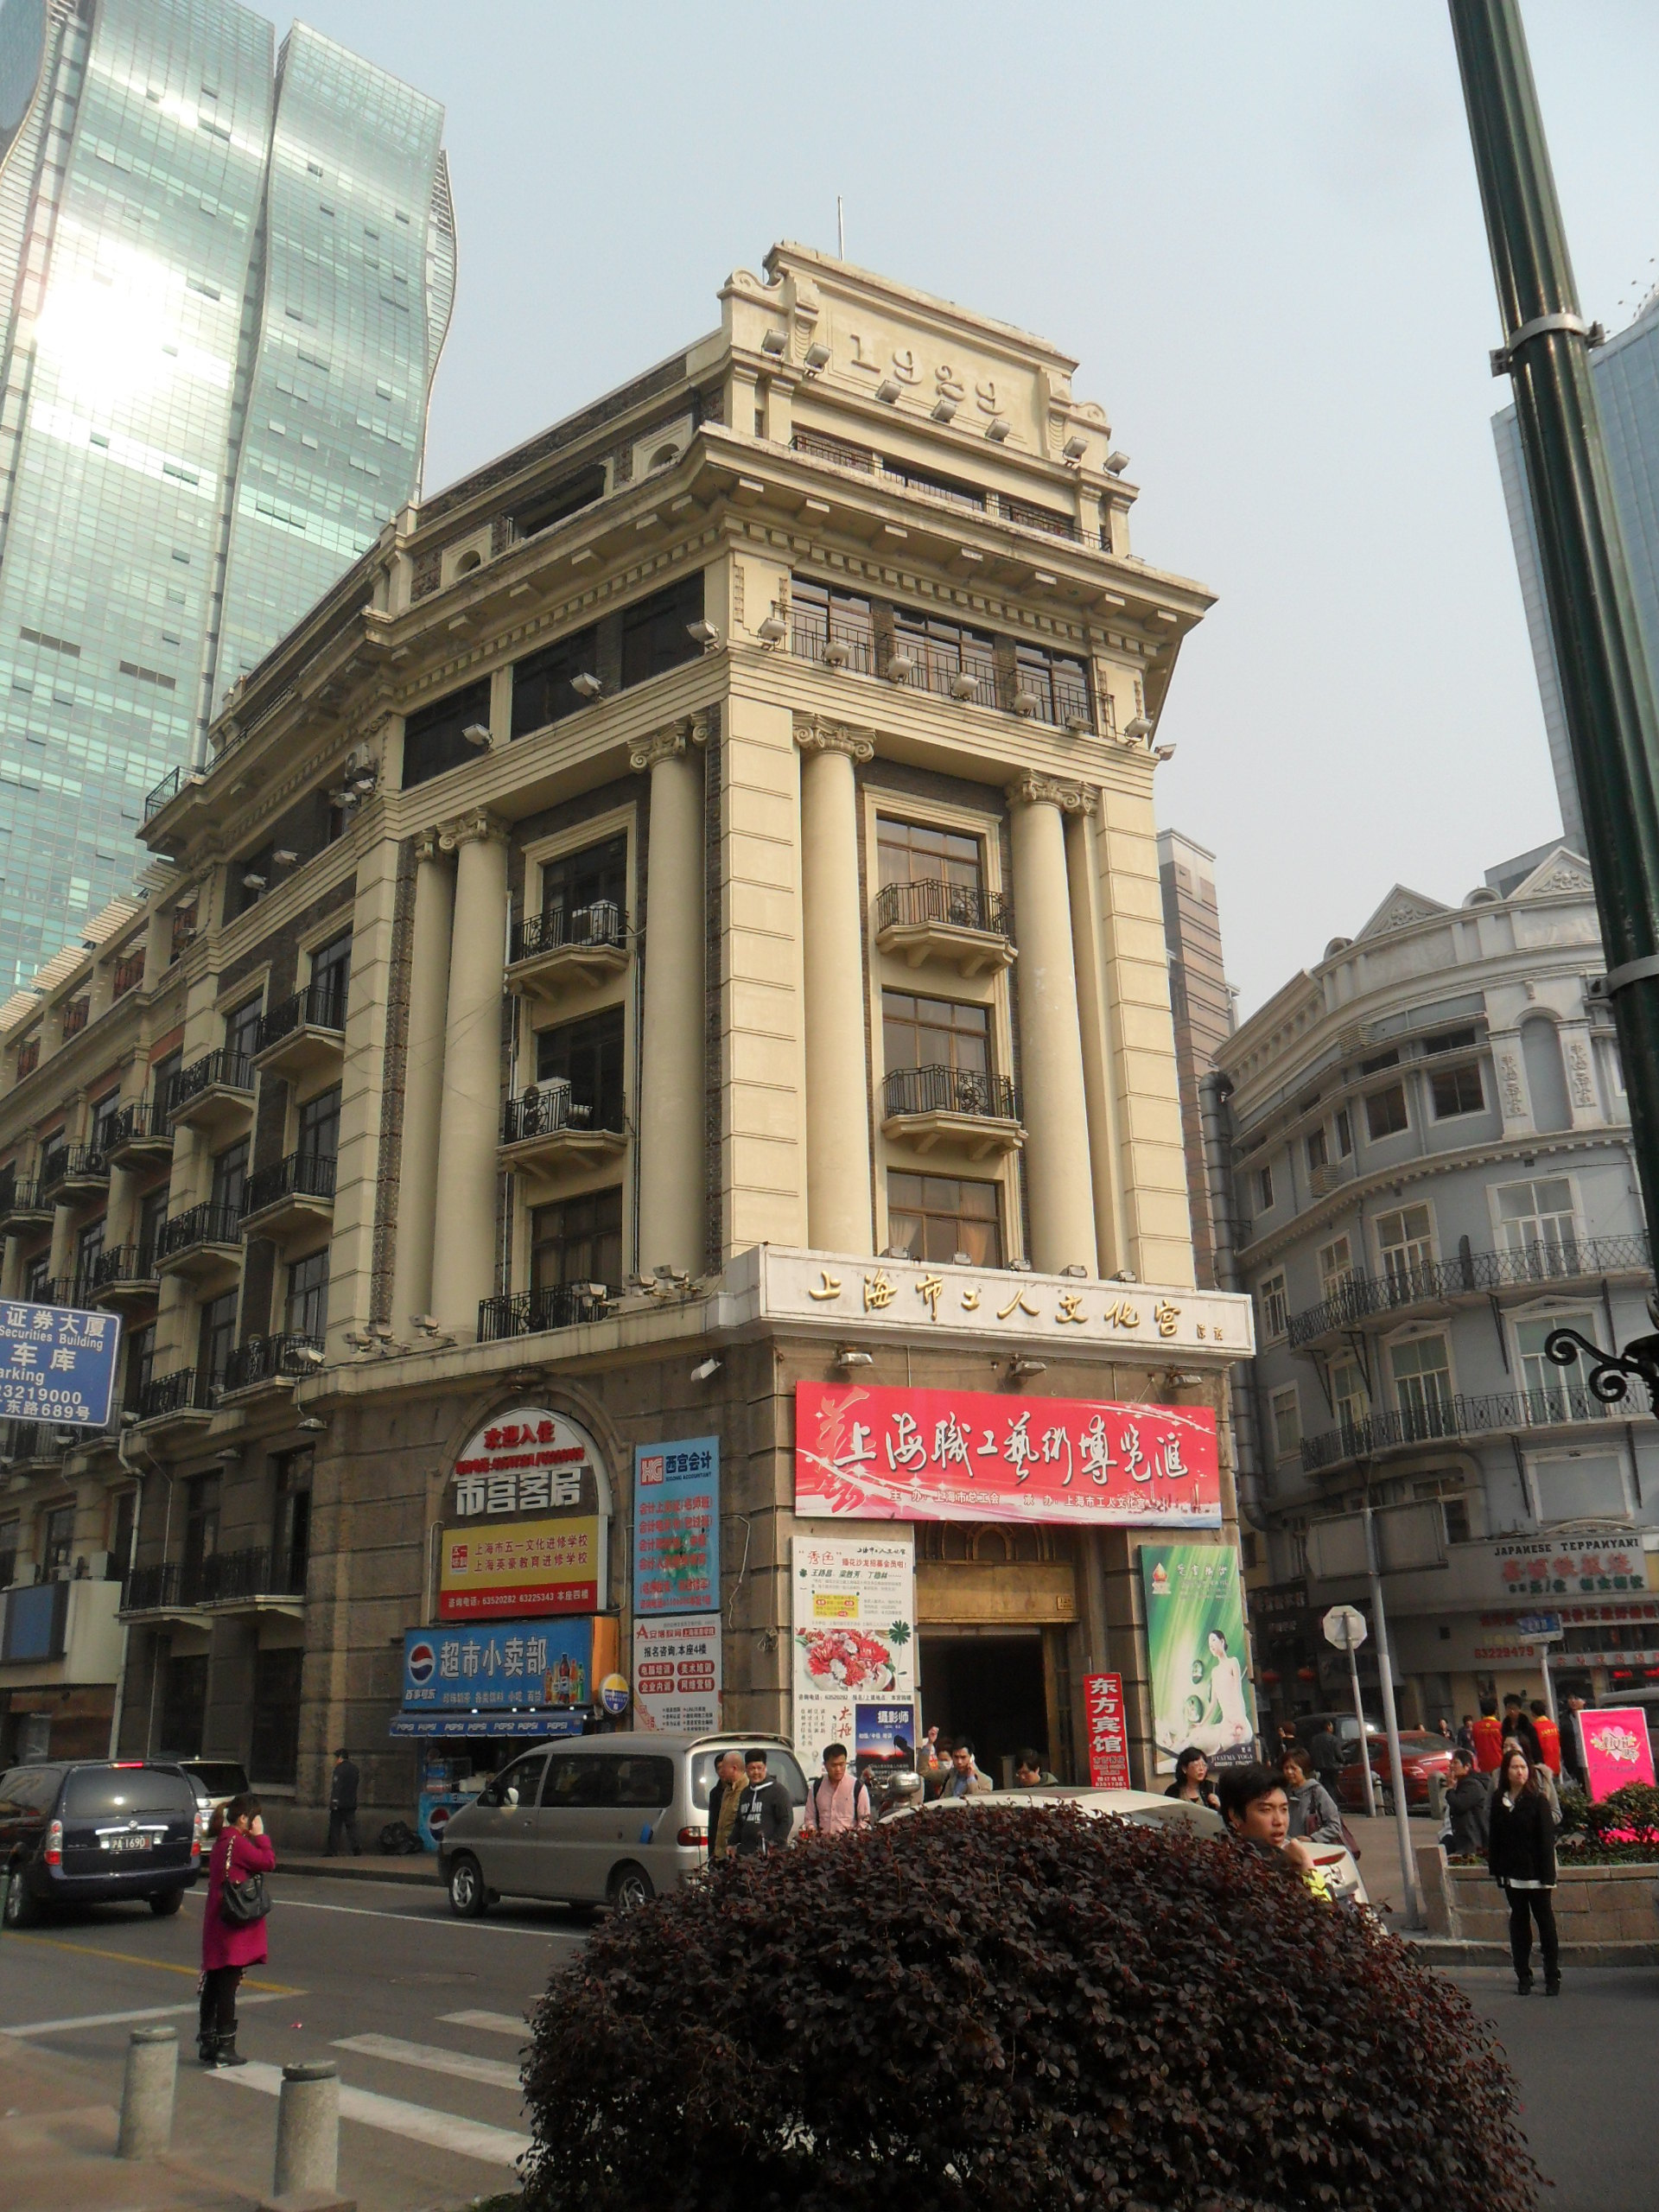 至2021年底上海18条地铁线全网图及站点一览-轨交运营-地铁派-上海地铁俱乐部|轨道交通俱乐部论坛|上海城建论坛